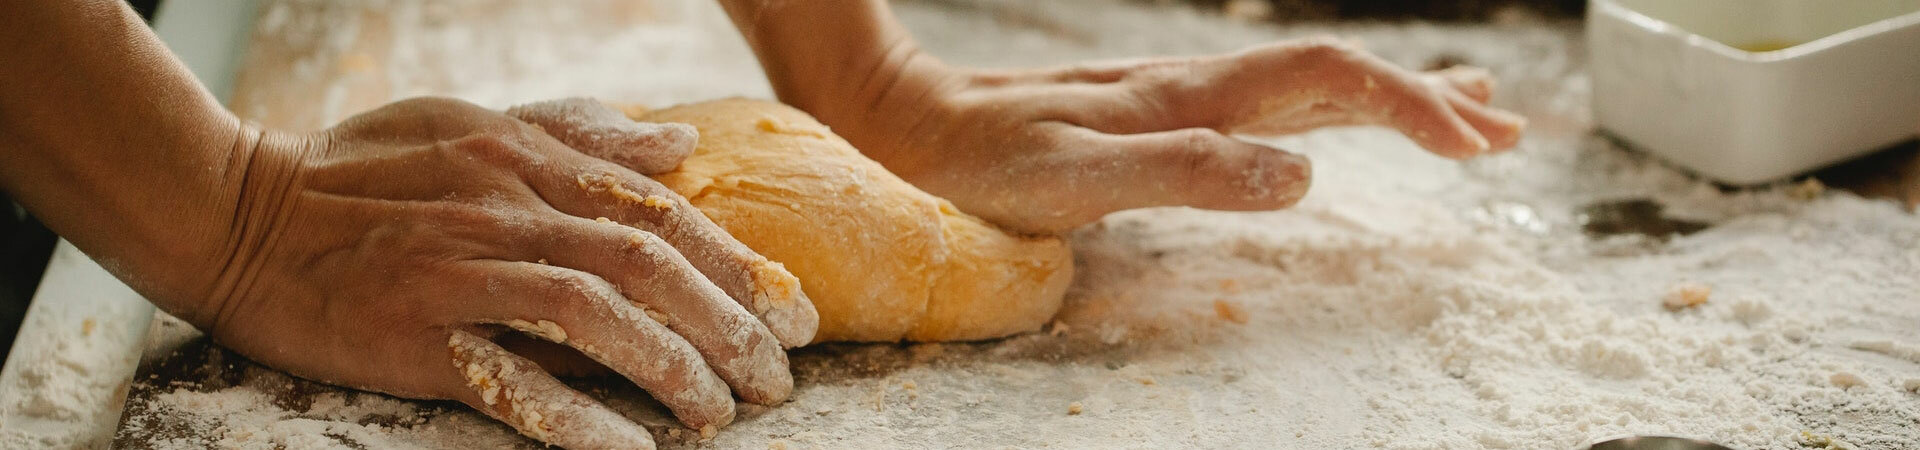 Contact – Le Pain d’Ugolin | Livraison de pains & viennoiseries artisanale – Gard & Hérault